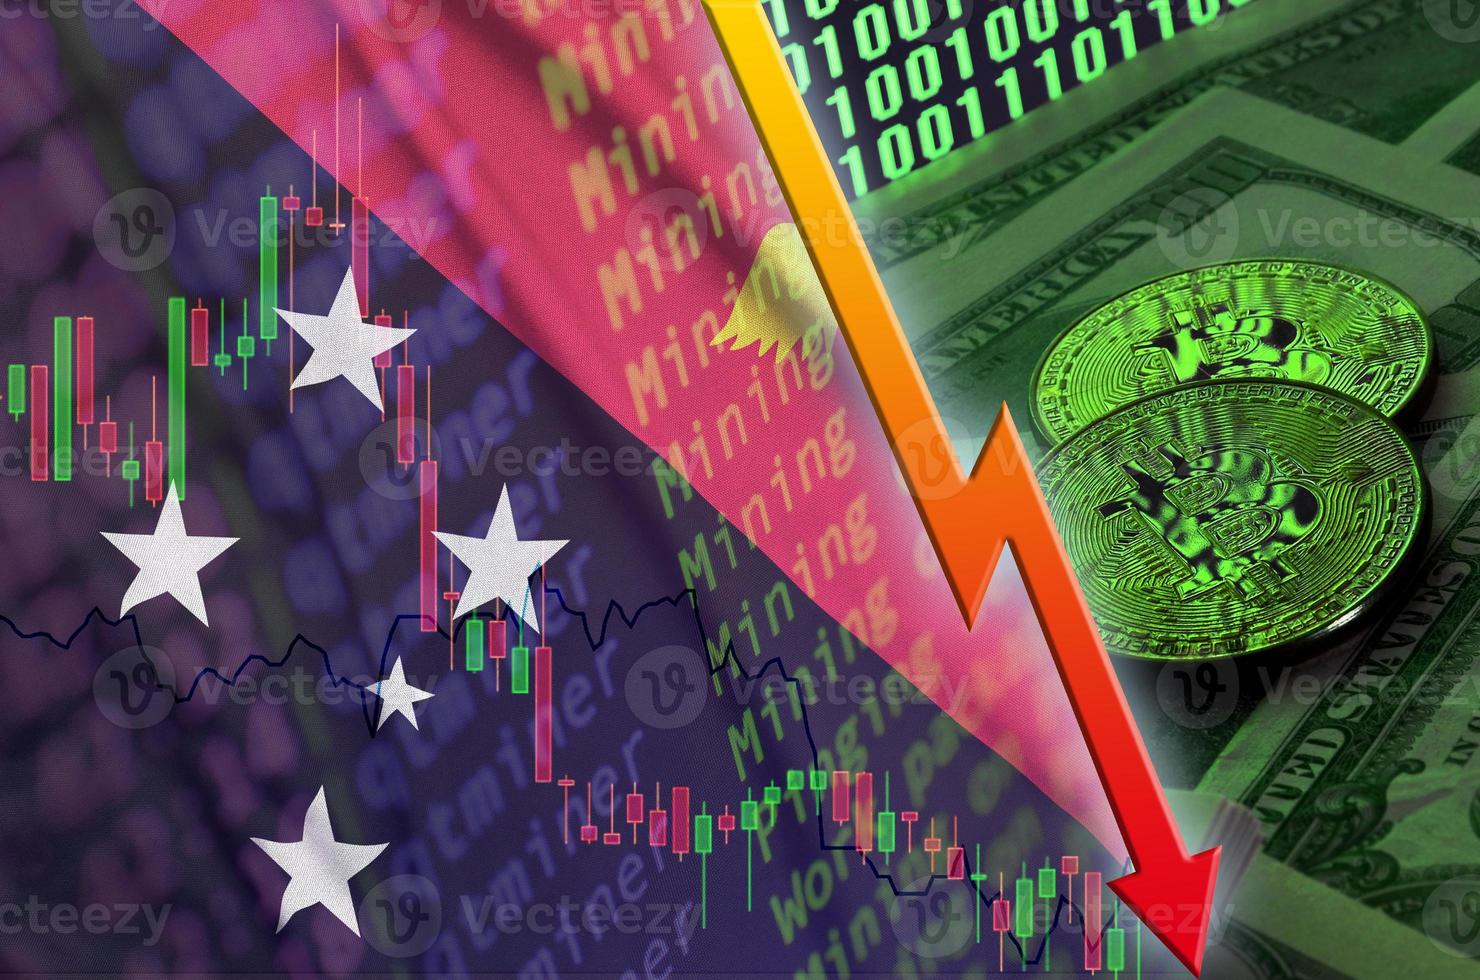 Papoea nieuw Guinea vlag en cryptogeld vallend neiging met twee bitcoins Aan dollar rekeningen en binair code Scherm foto